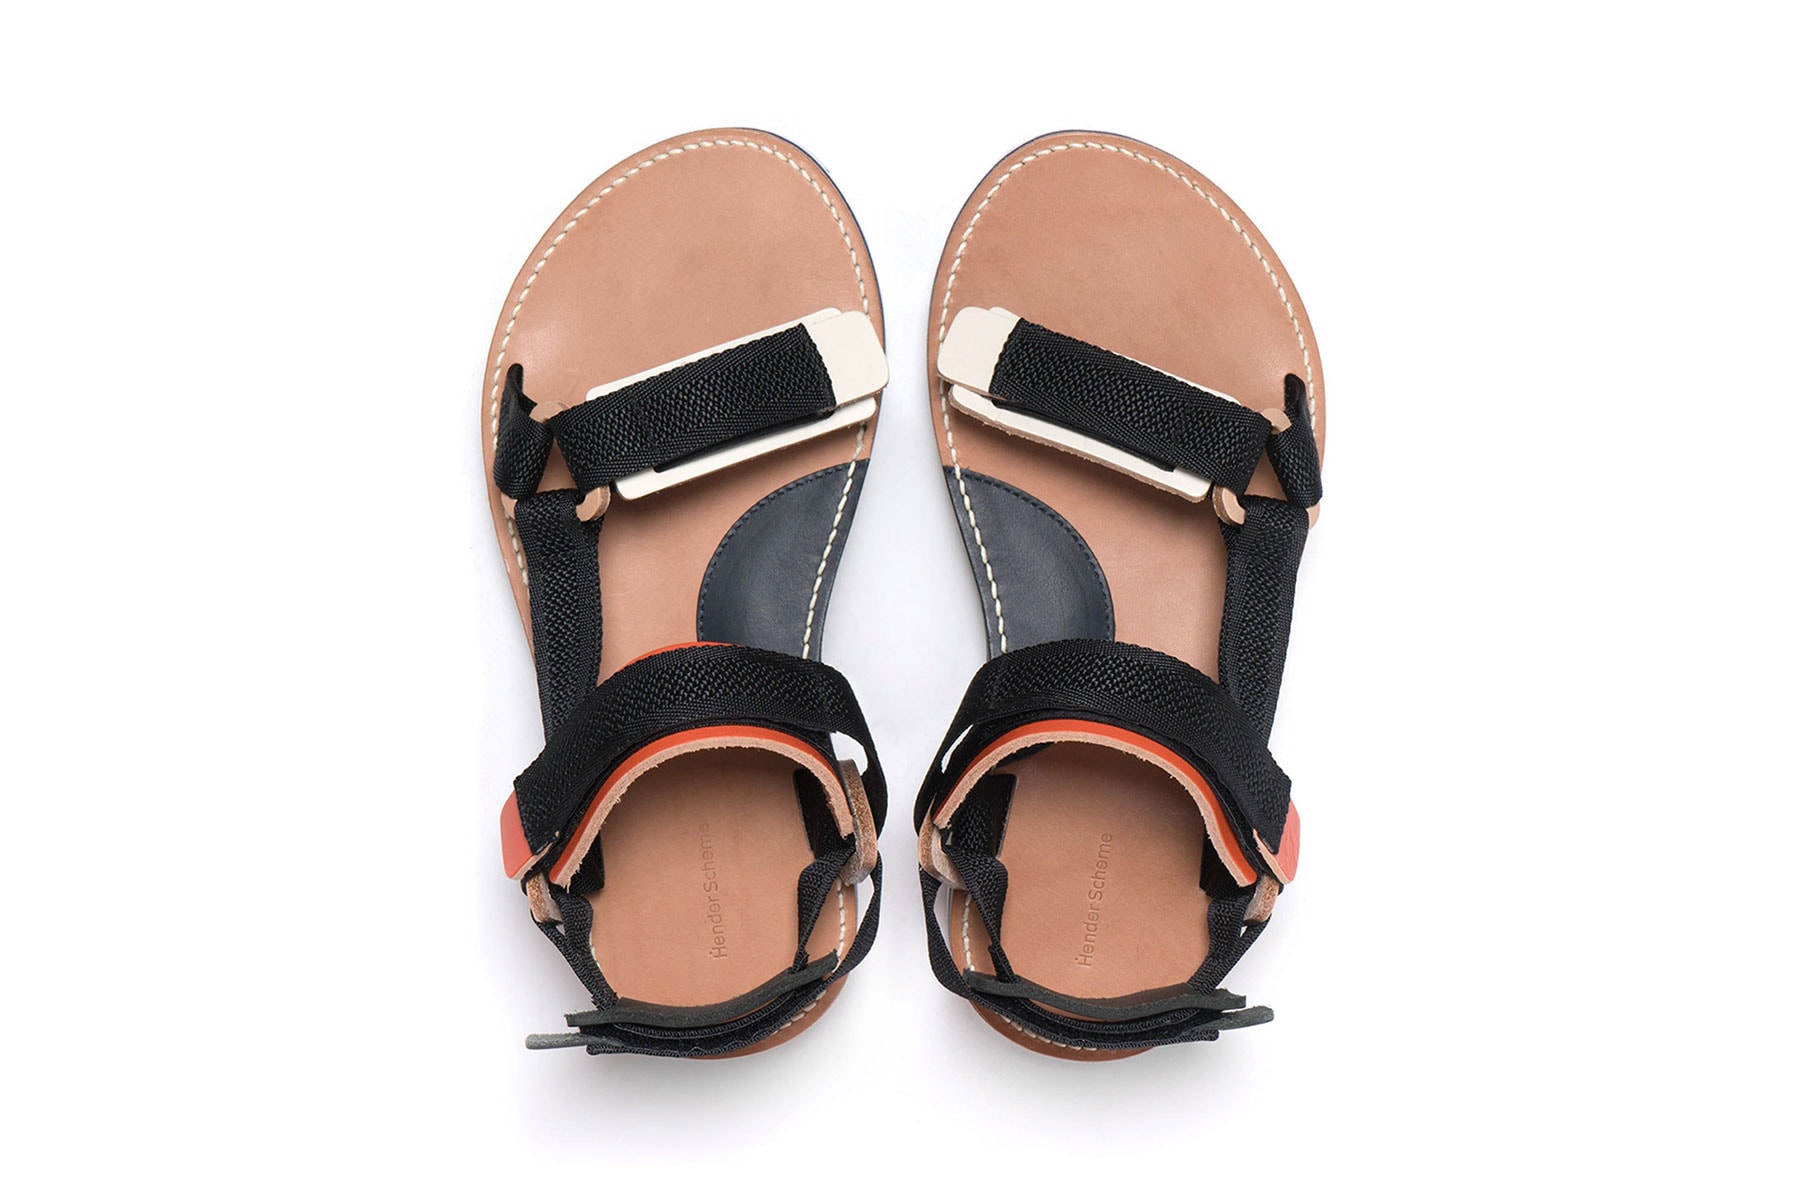 헨더 스킴 2018 봄, 여름 신발 & 기타 액세서리 hender scheme shoes spring summer accessories